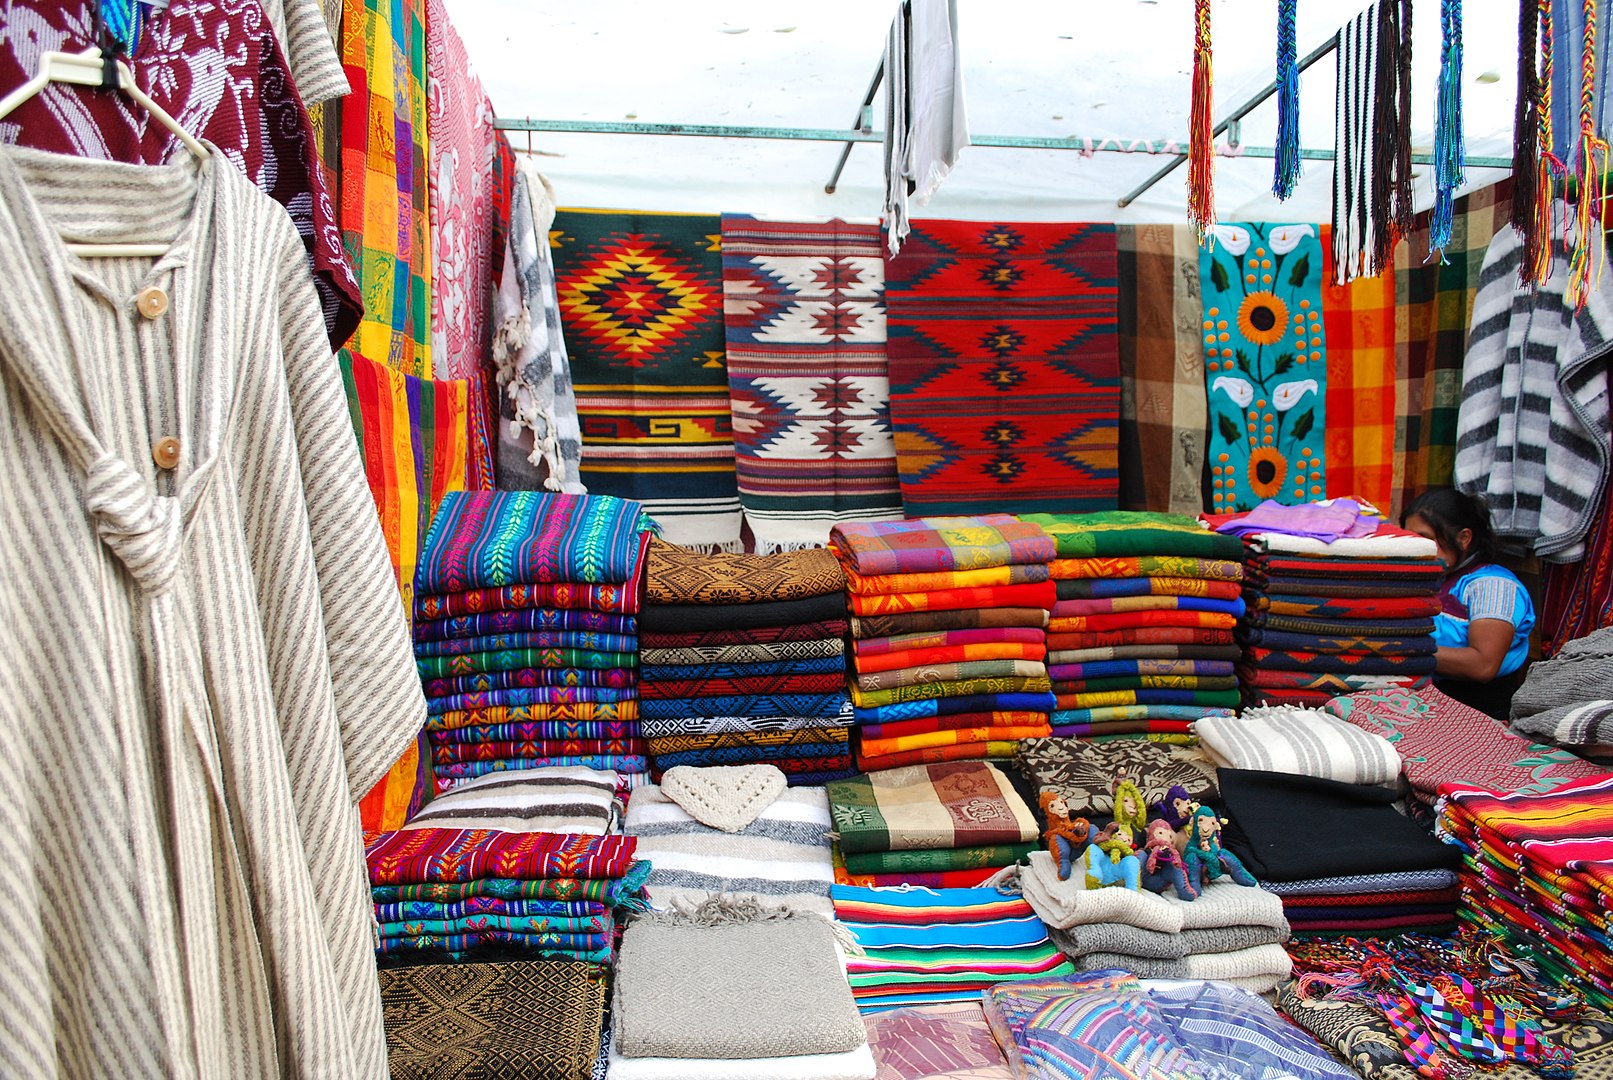 Textile stall in Santo Domingo